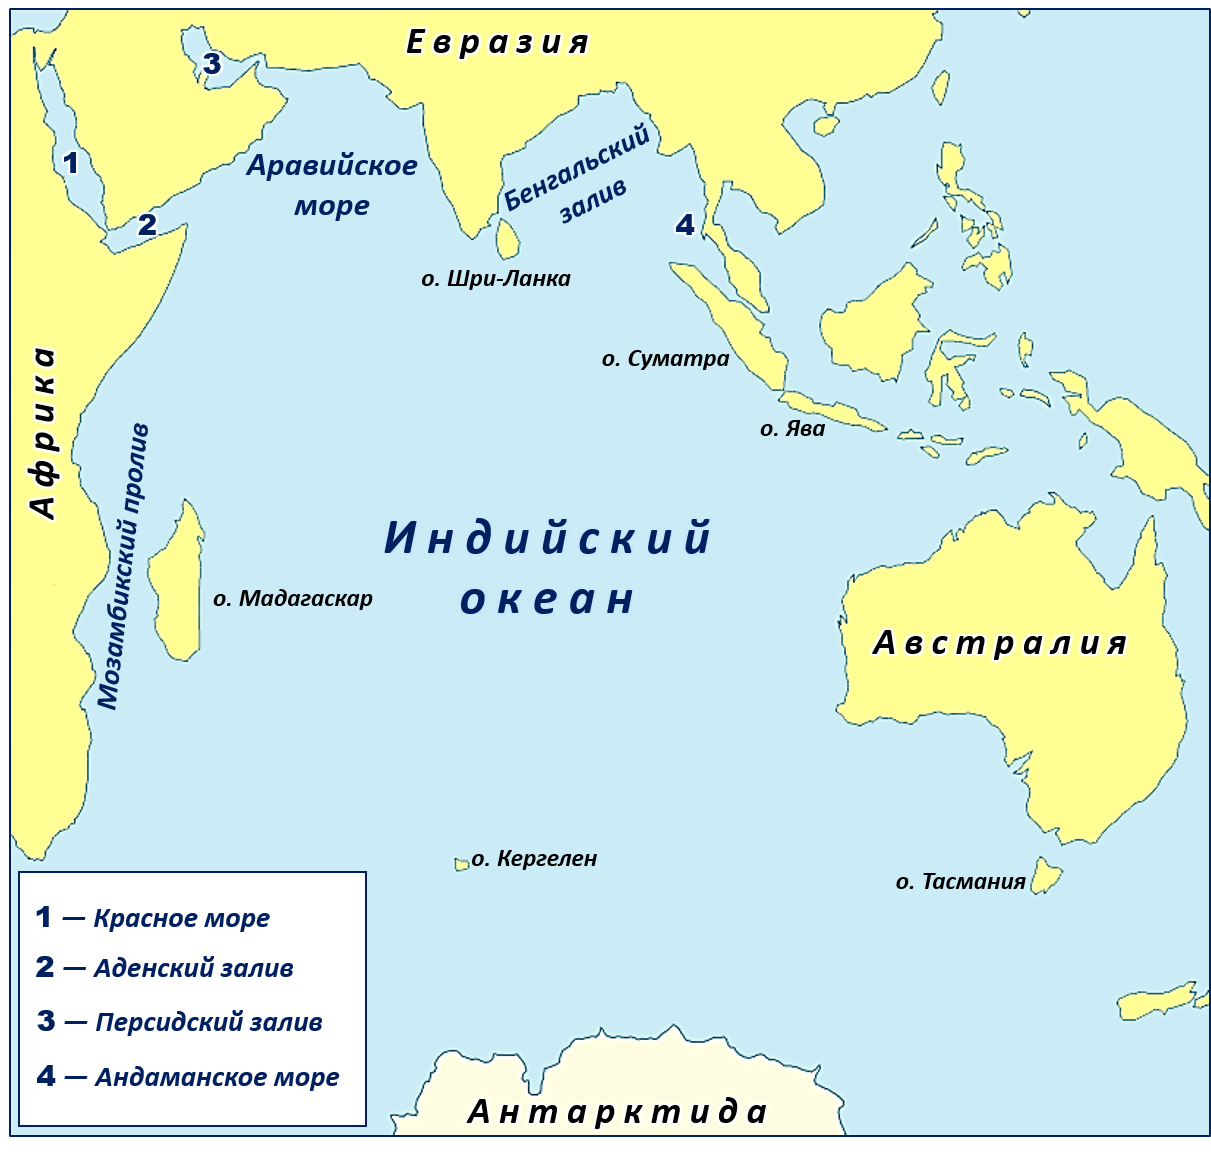 Остров омываемый двумя океанами. Карта индийского океана с морями заливами и проливами. Новый Континент в индийском океане. Крупнейшие моря индийского океана на карте. Архипелаг Кергелен новый Континент.